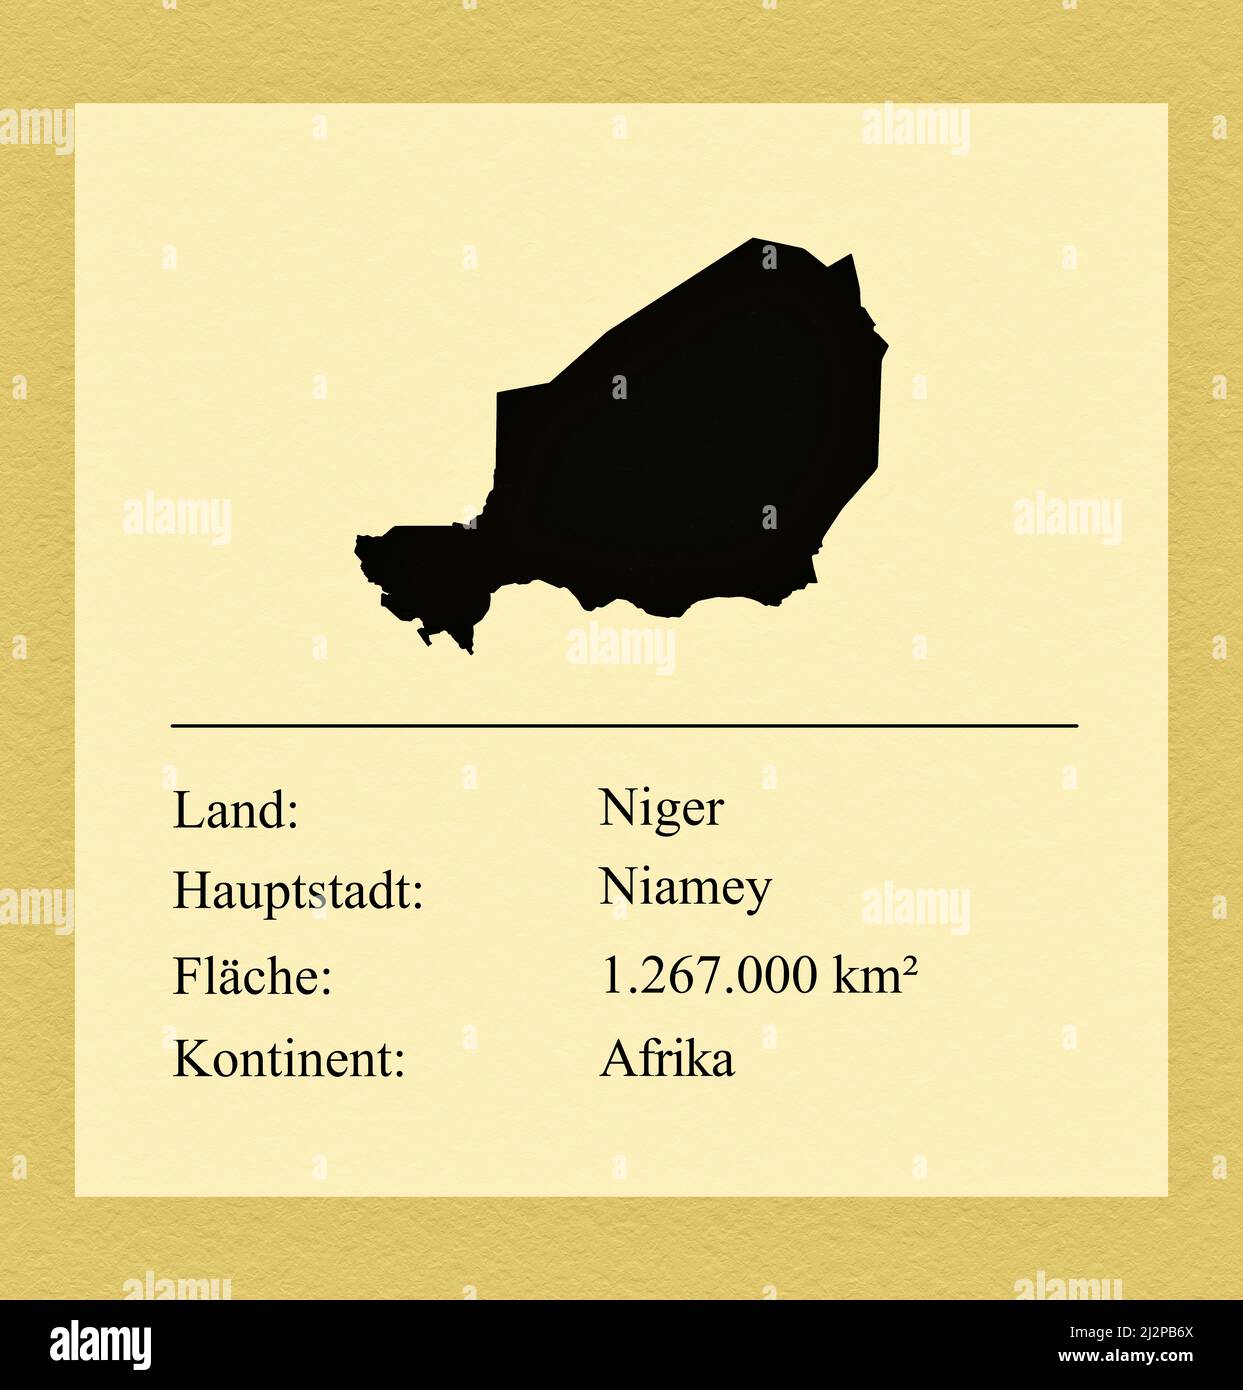 Umrisse des Landes Niger, darunter ein kleiner Steckbrief mit Ländernamen, Hauptstadt, Fläche und Kontinent Foto Stock